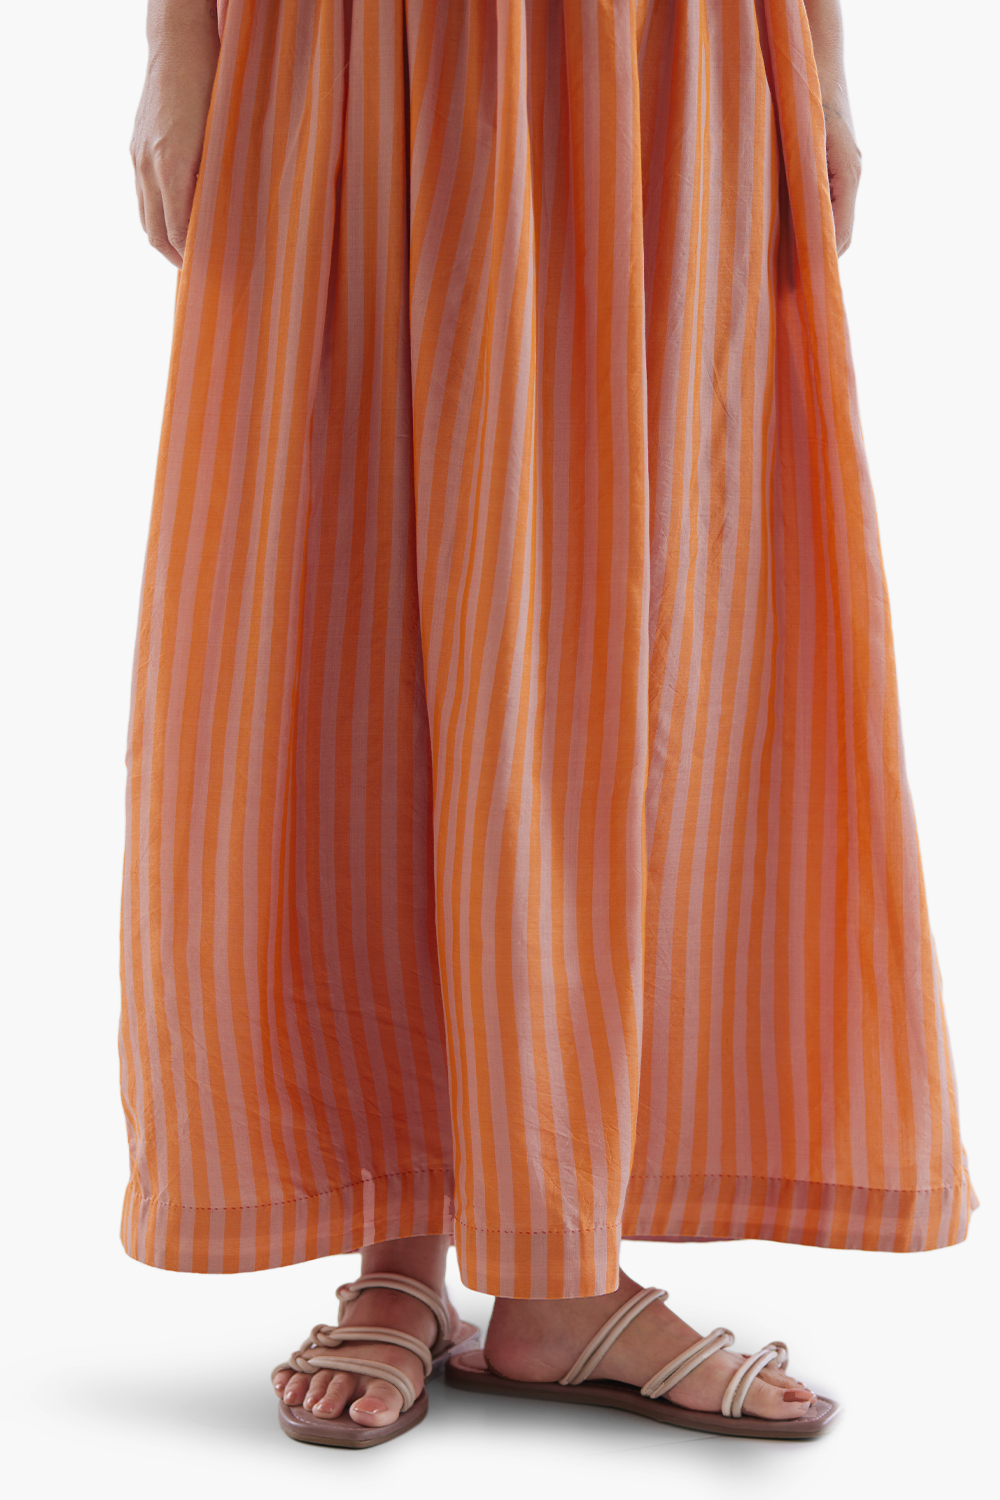 Hand-in-Hand Orange Dress